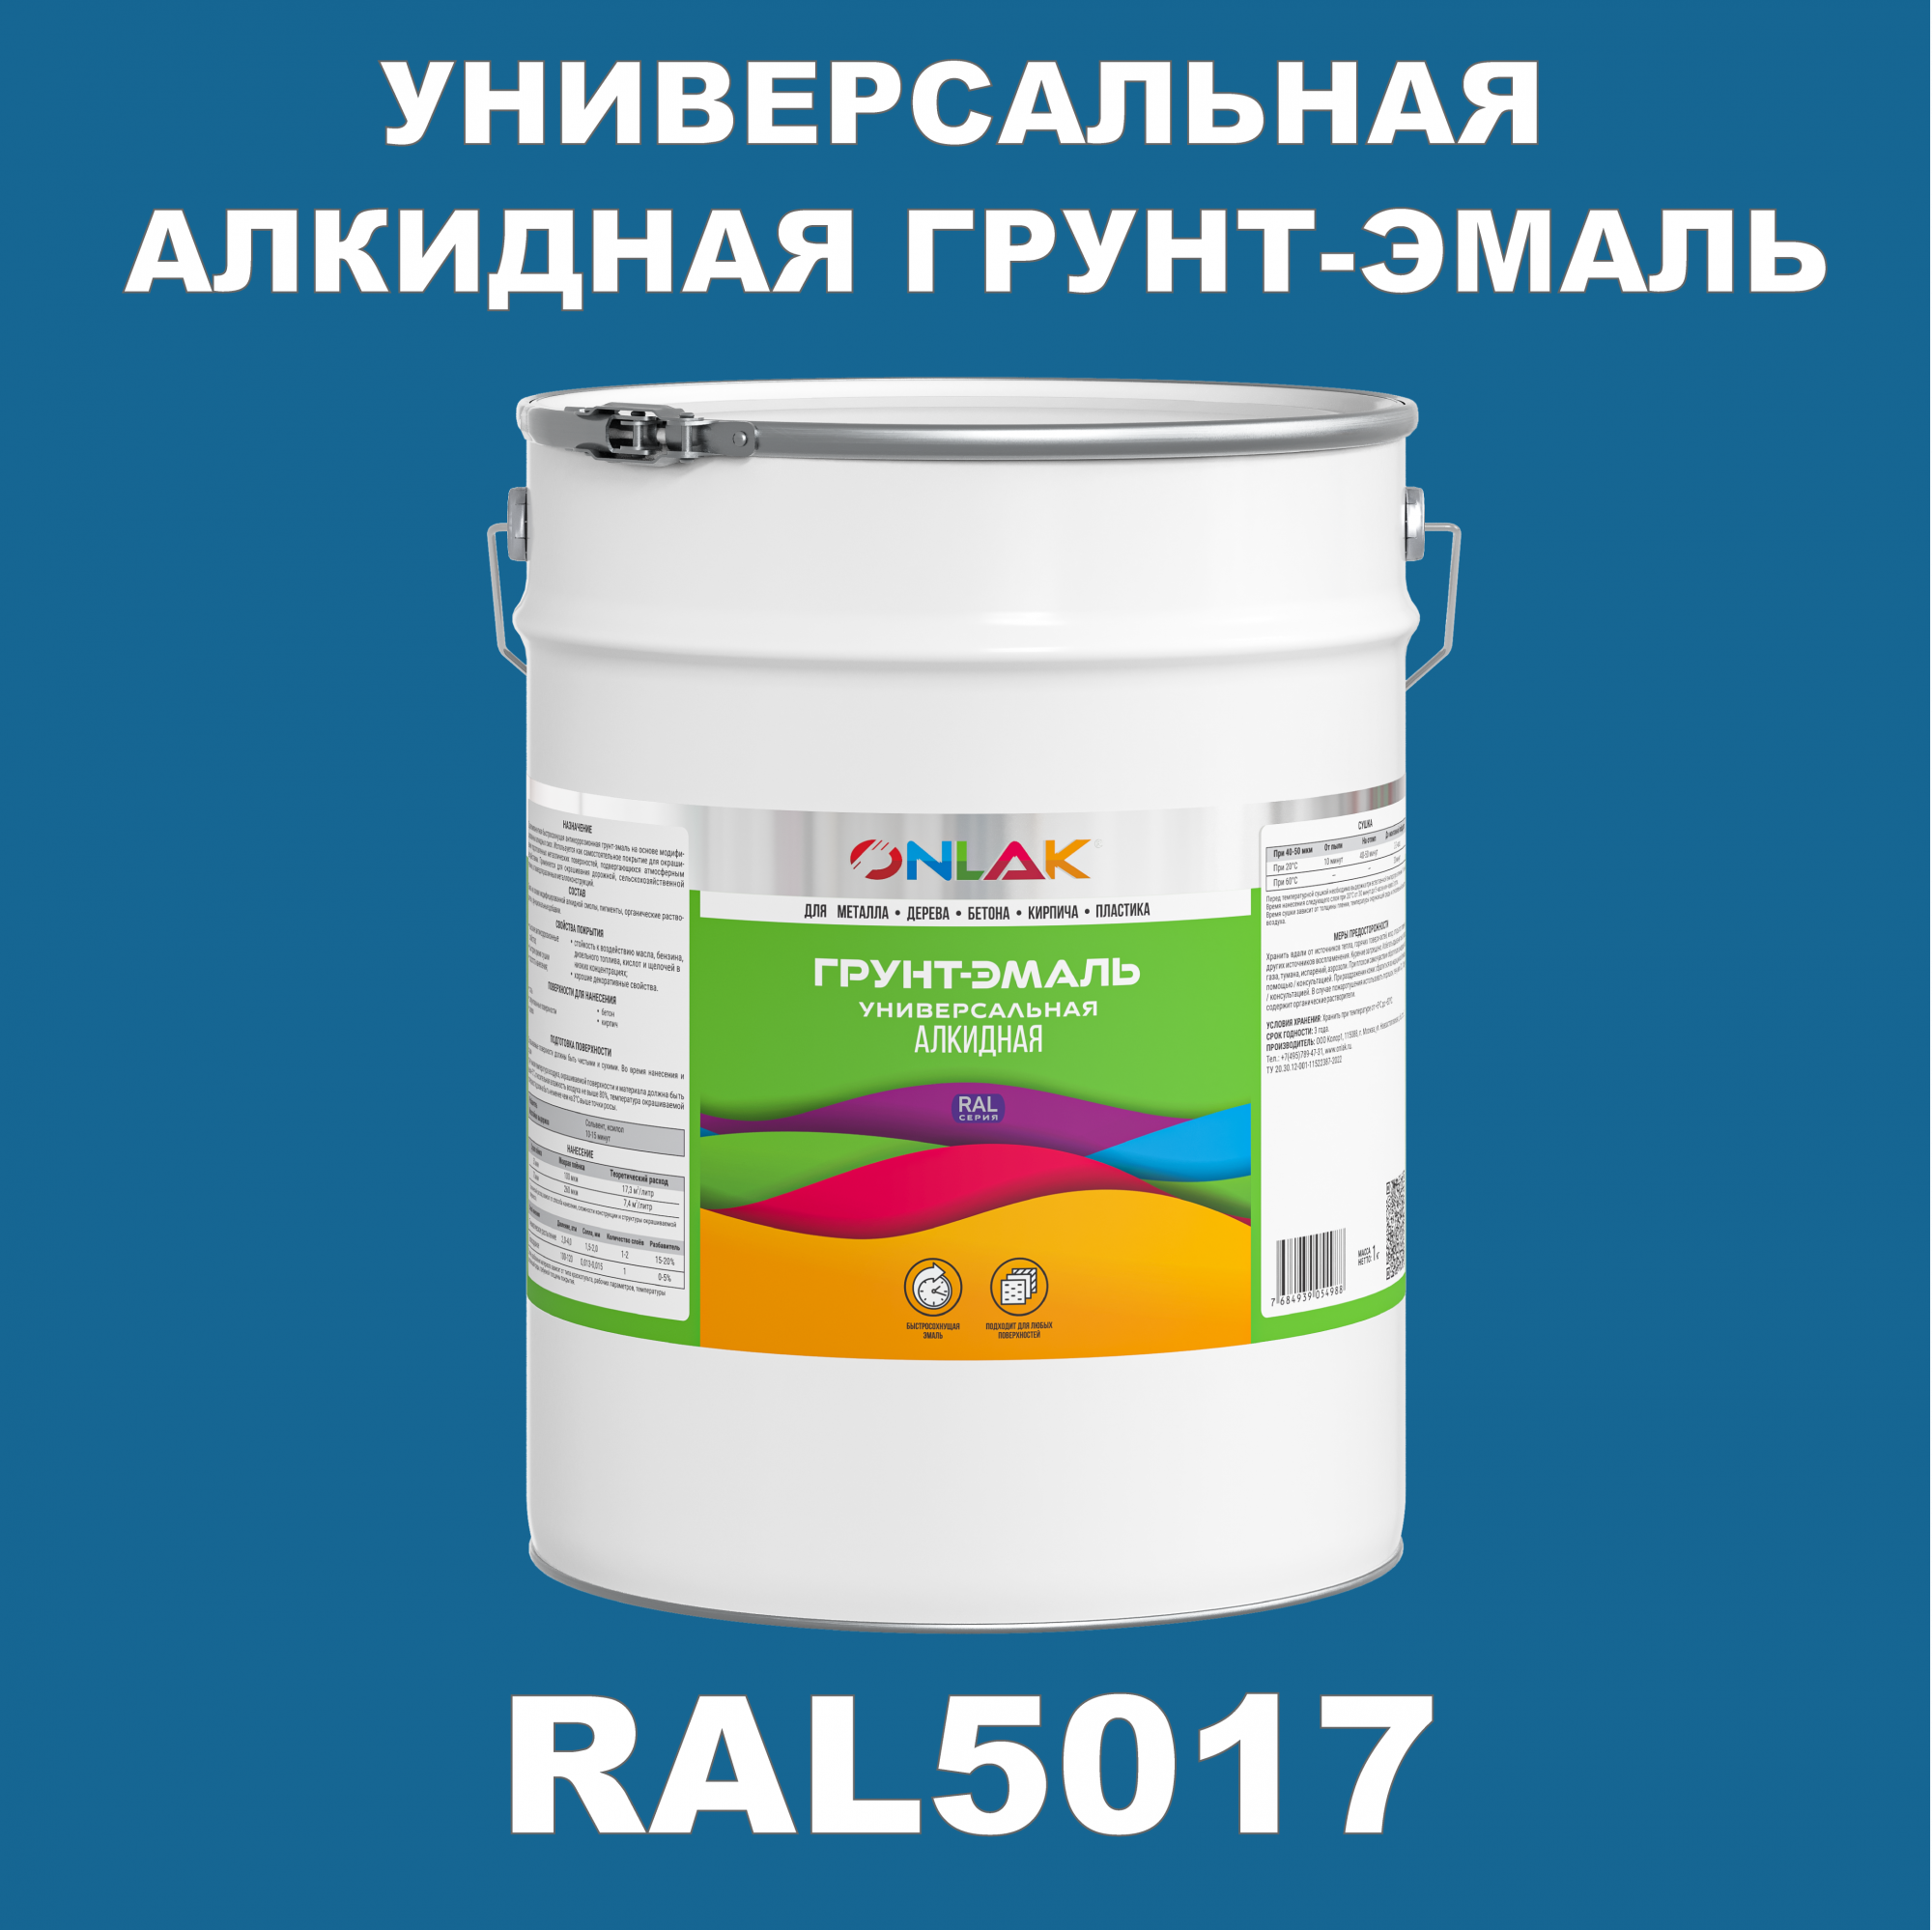 Грунт-эмаль ONLAK 1К RAL5017 антикоррозионная алкидная по металлу по ржавчине 20 кг грунт эмаль yollo по ржавчине алкидная белая 0 9 кг